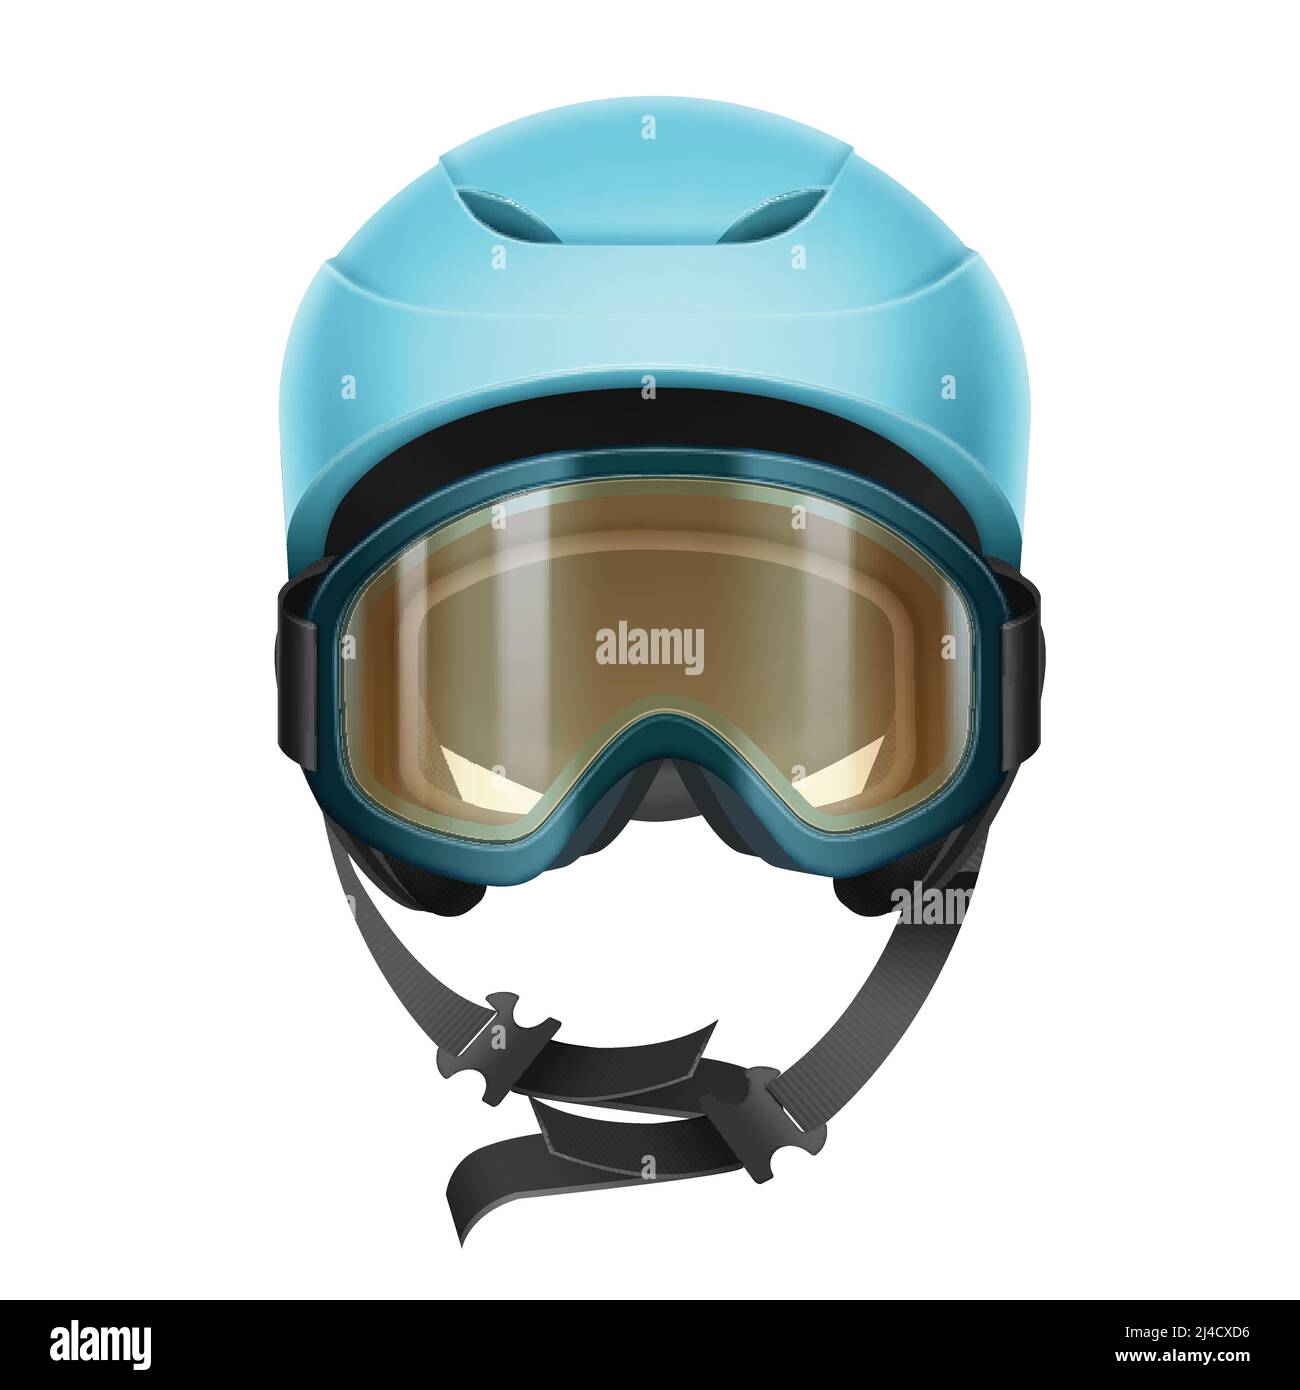 Funda para casco deportivo de invierno para esquí y snowboard